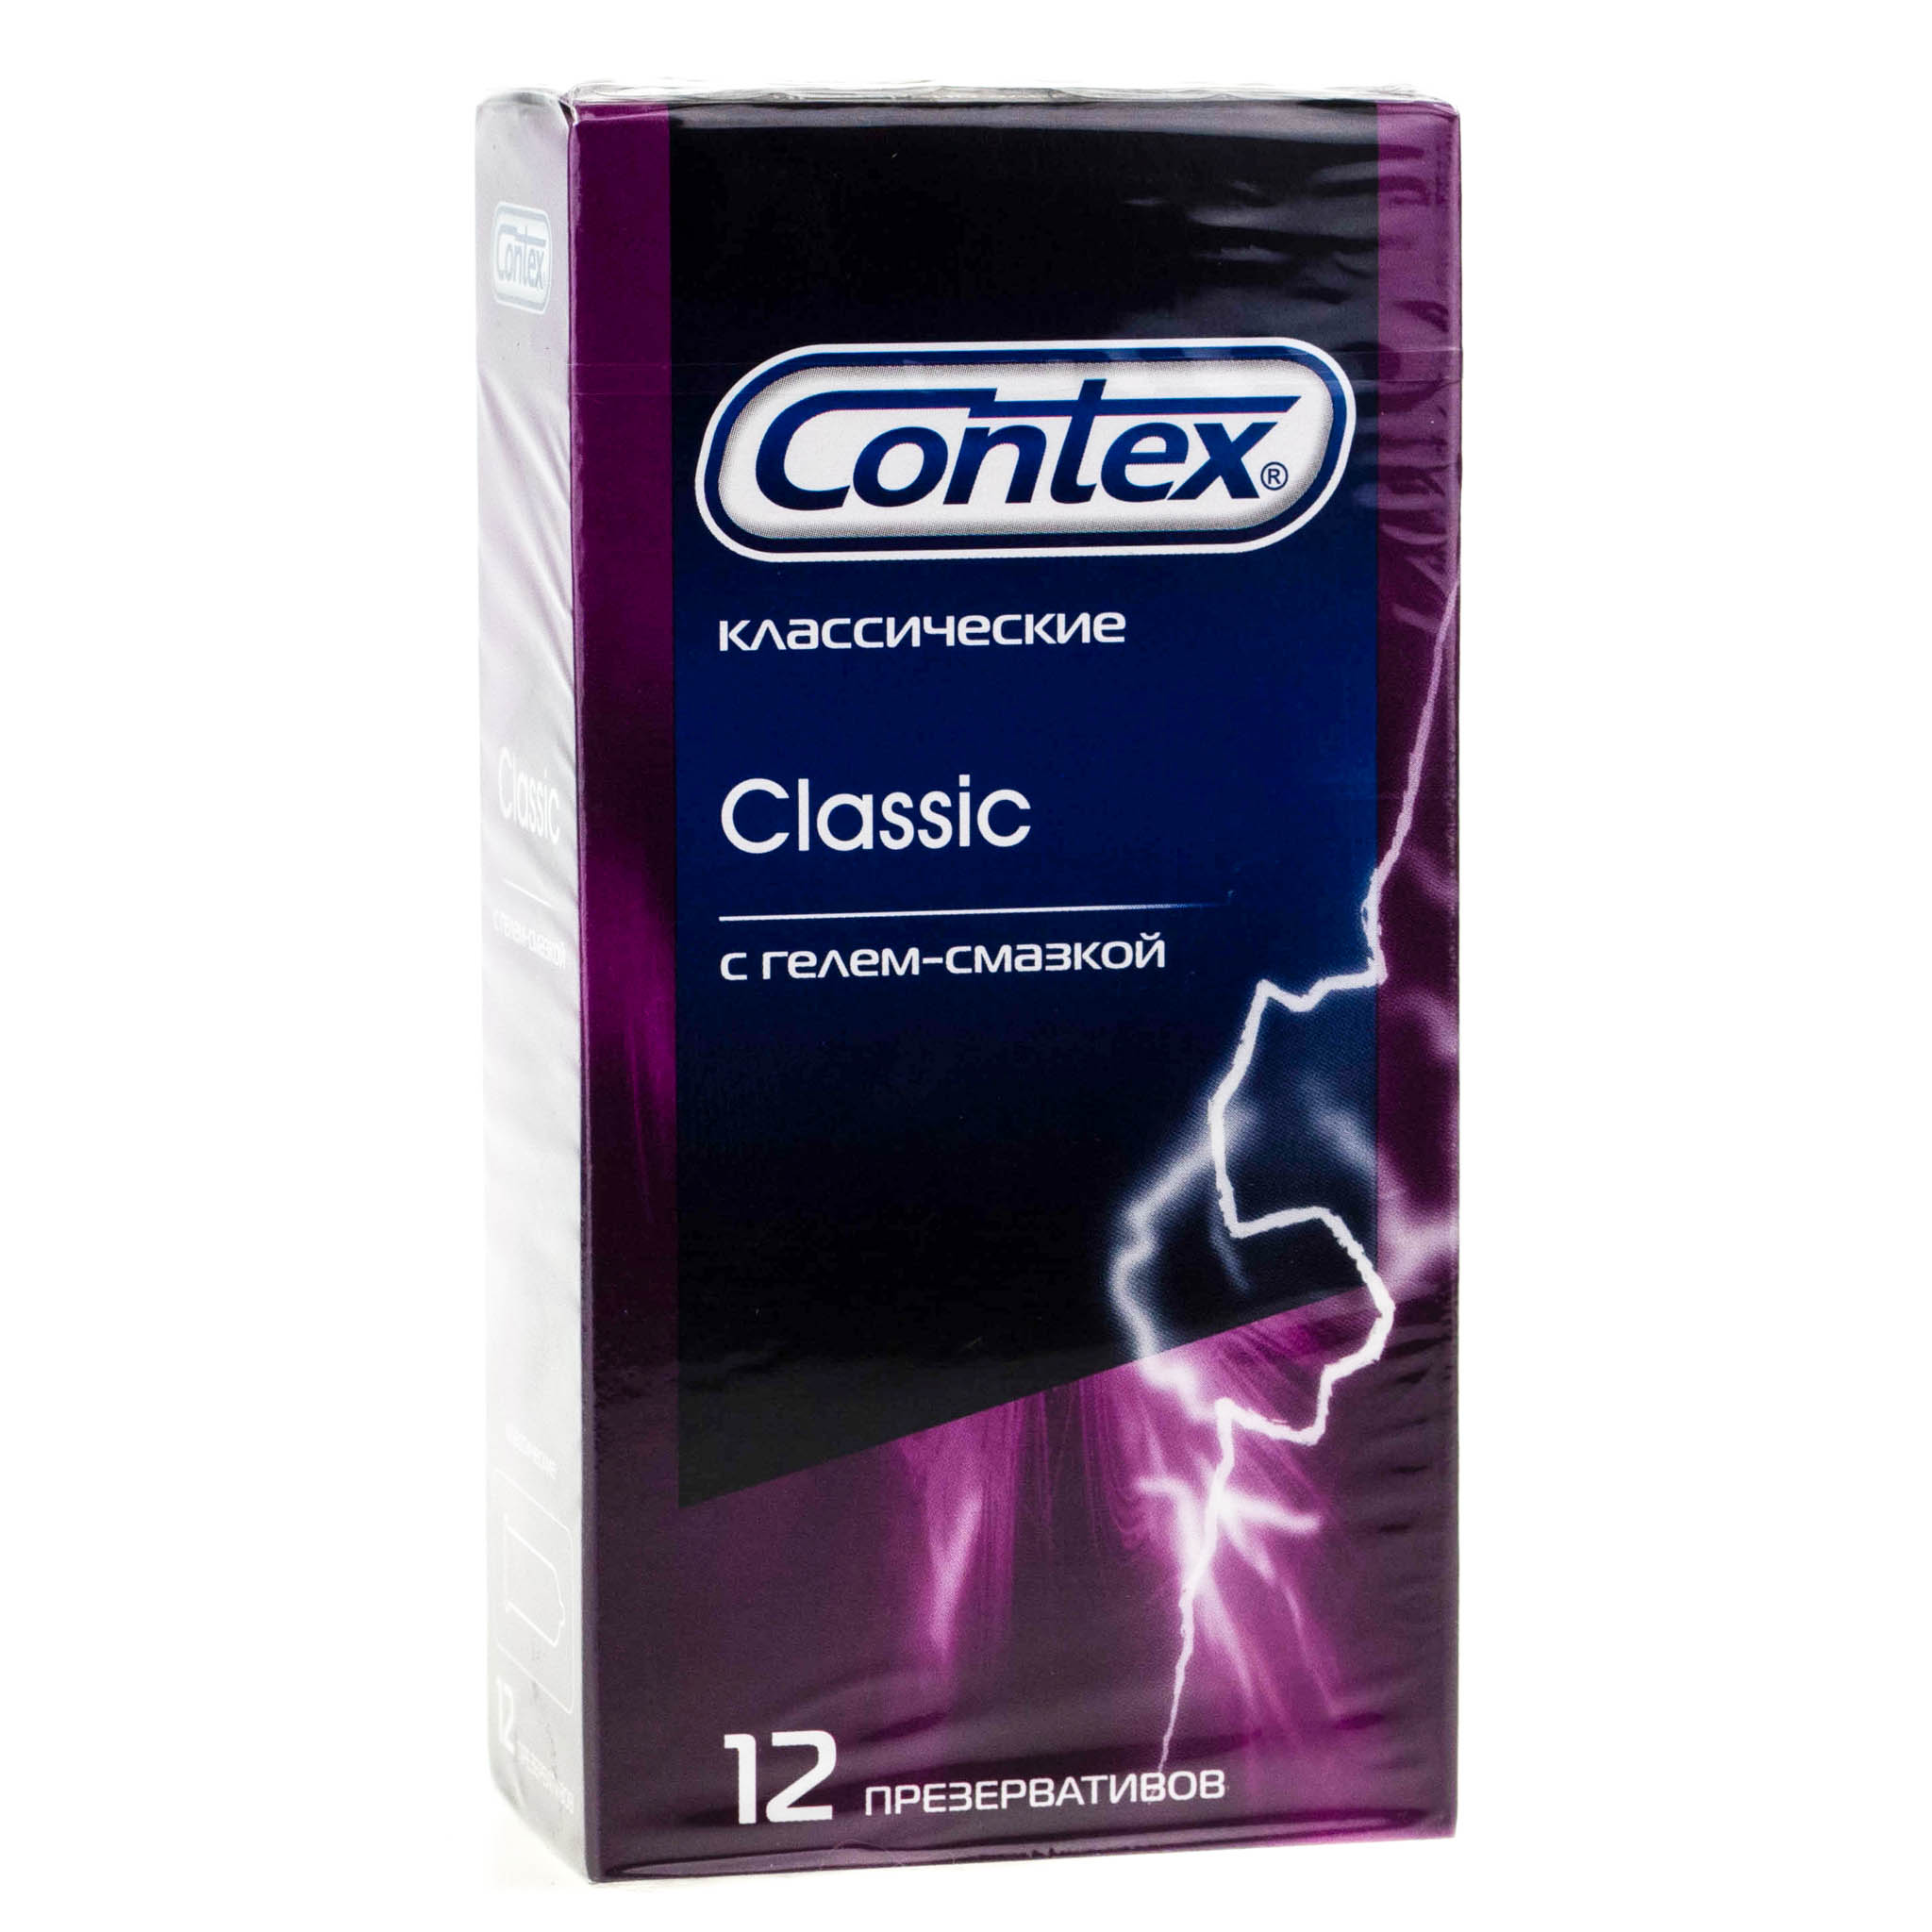 Контекс презервативы Лайтс №3